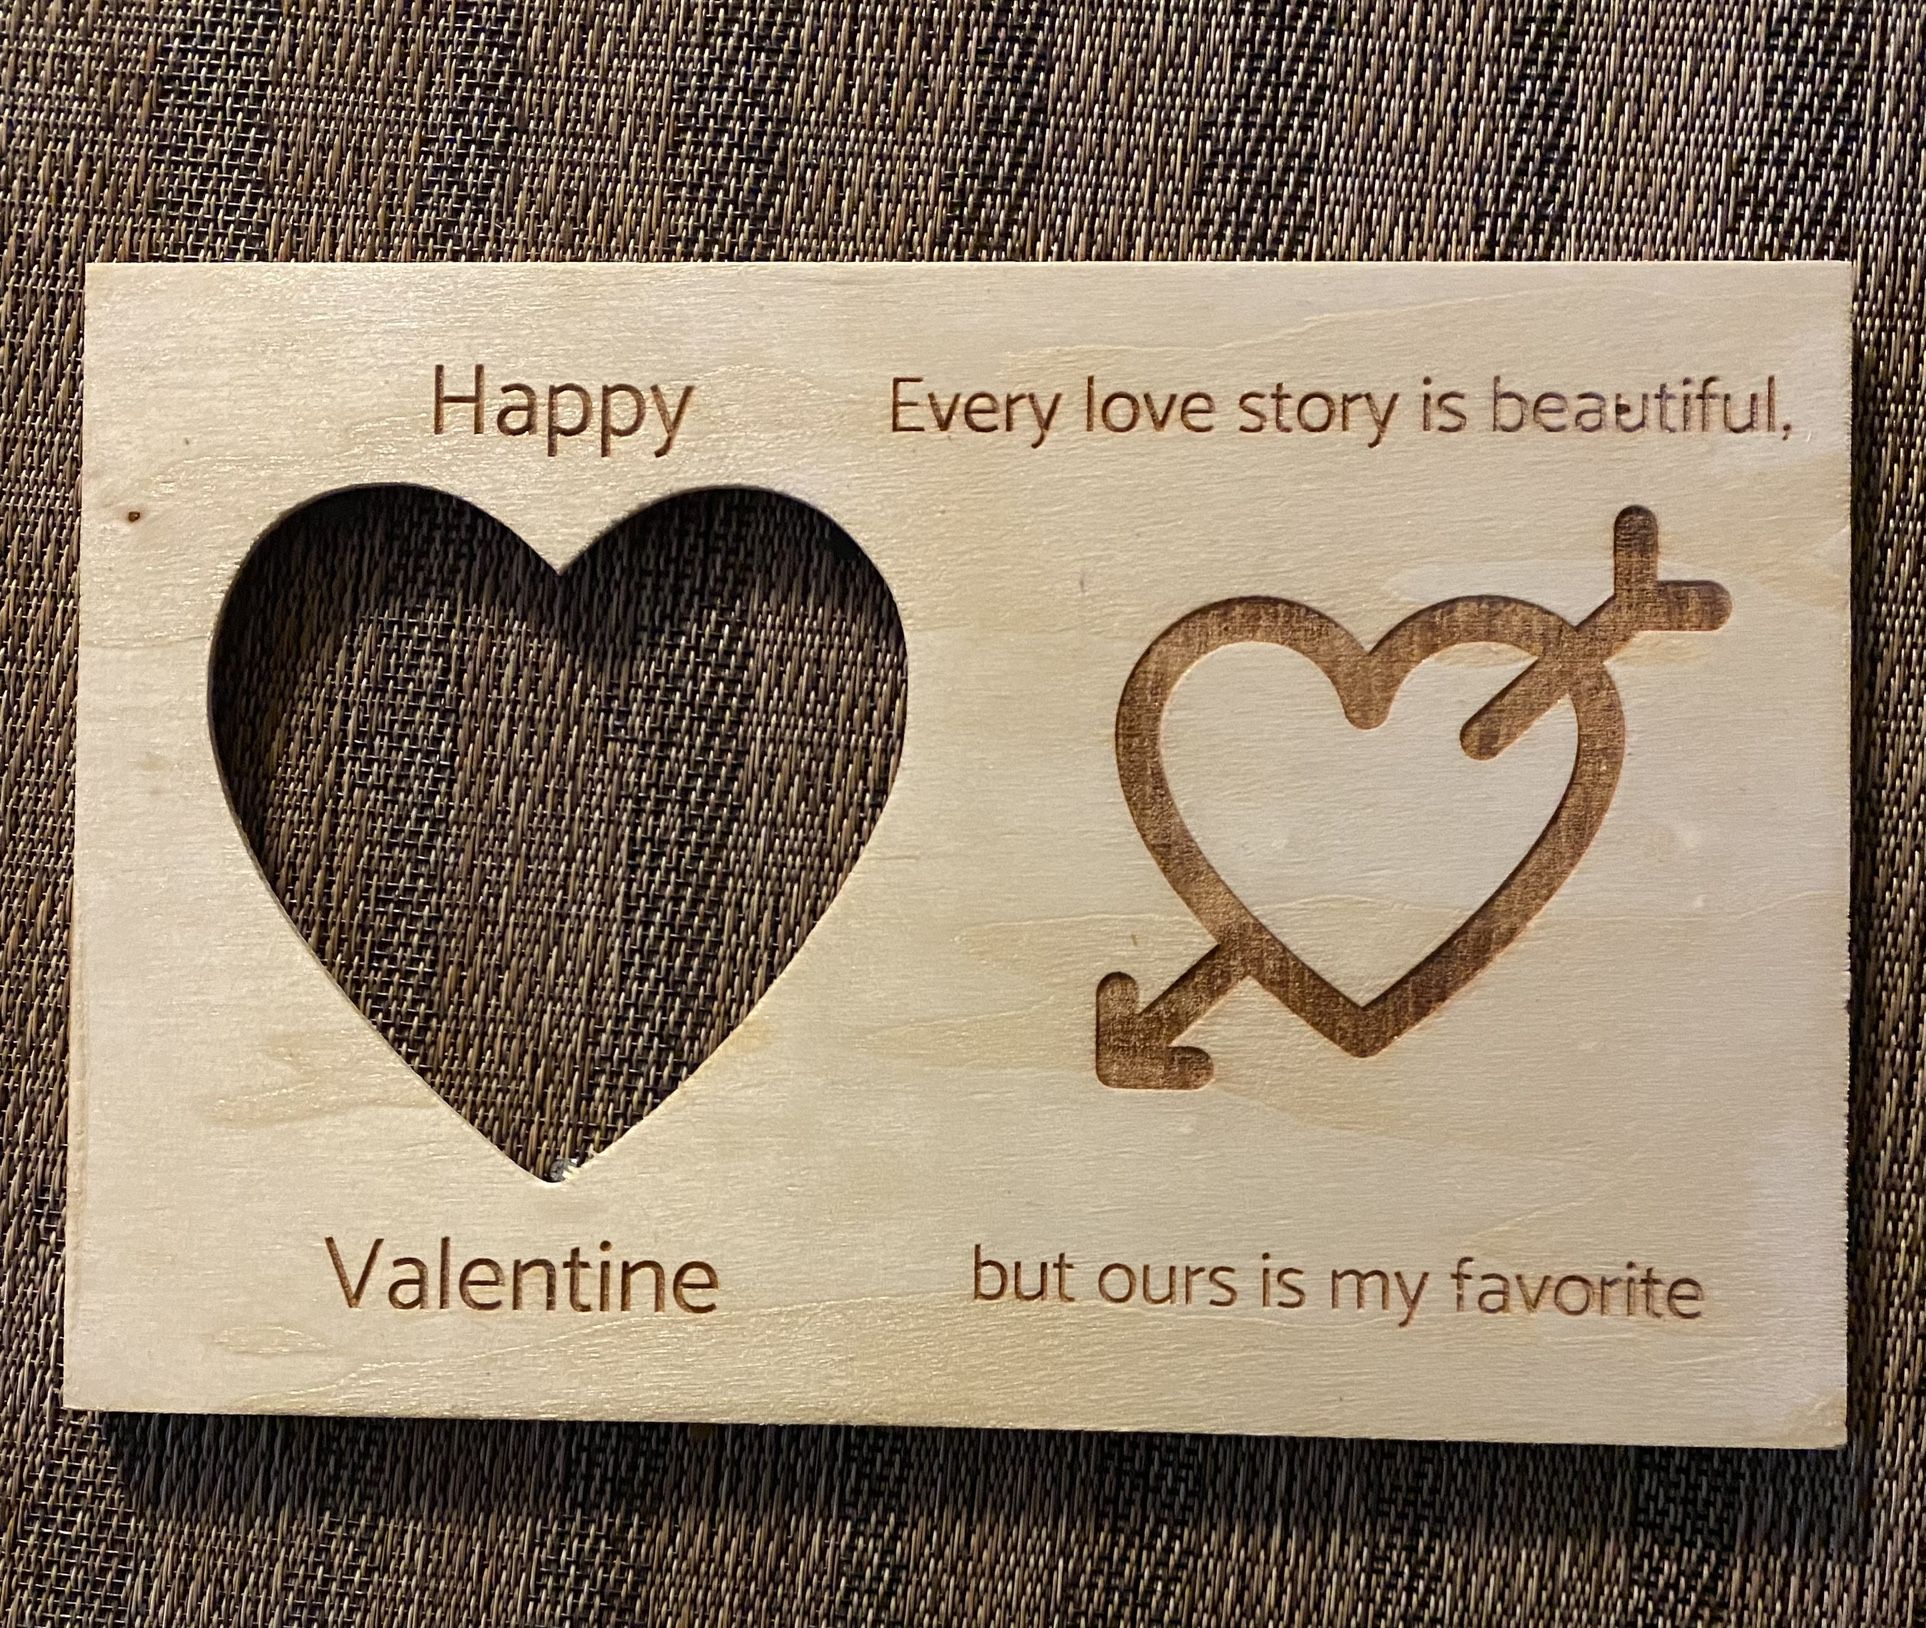 Valentine’s Day Gift